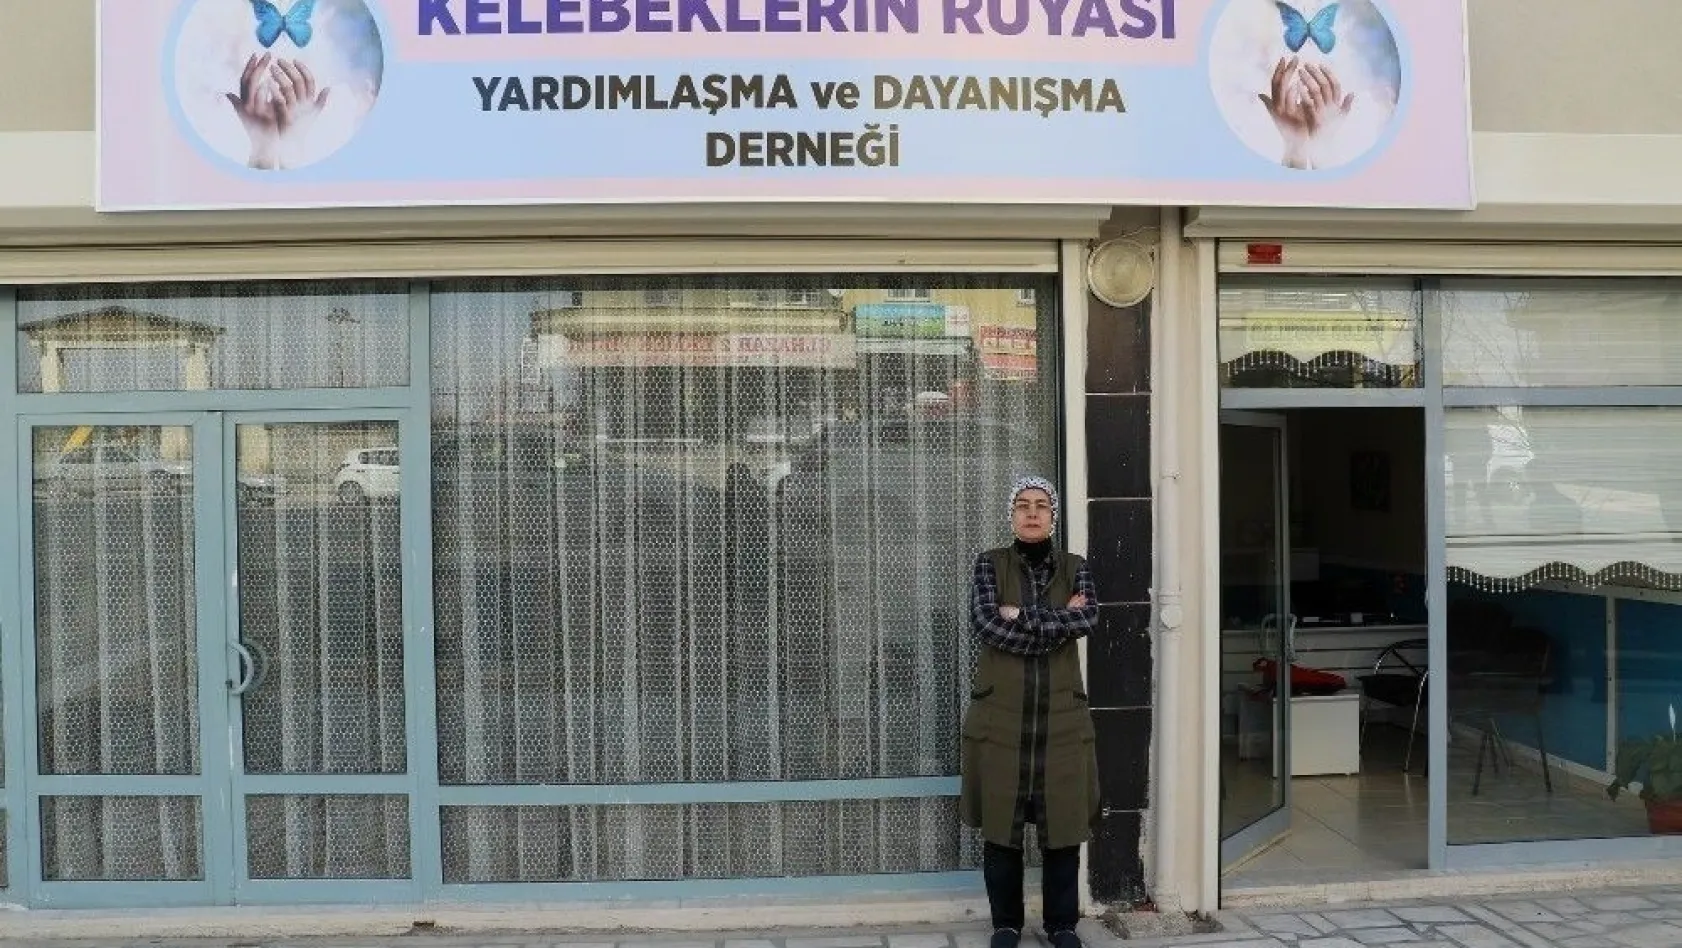 İstanbul'dan kelebek çocuklara medikal yardımı
